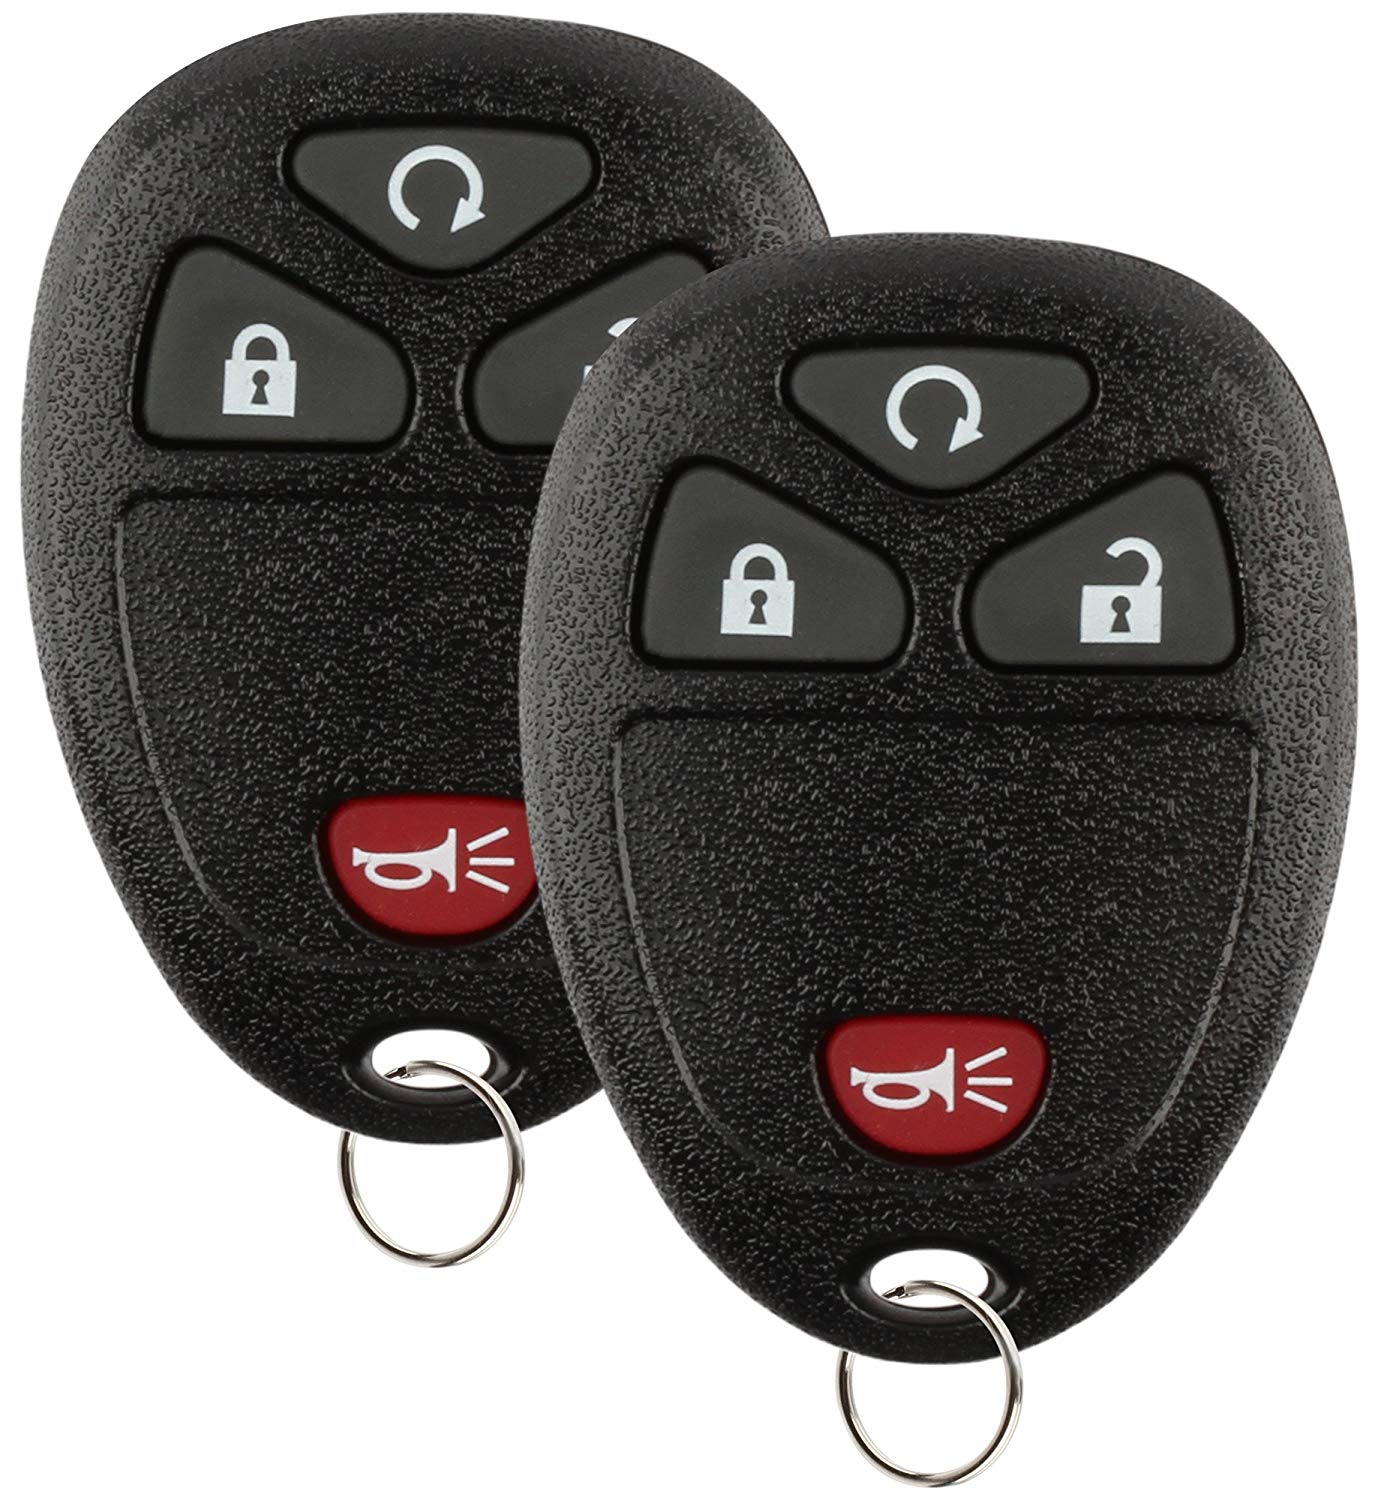 Keyless Entry Remote Control Car Key Fob 4